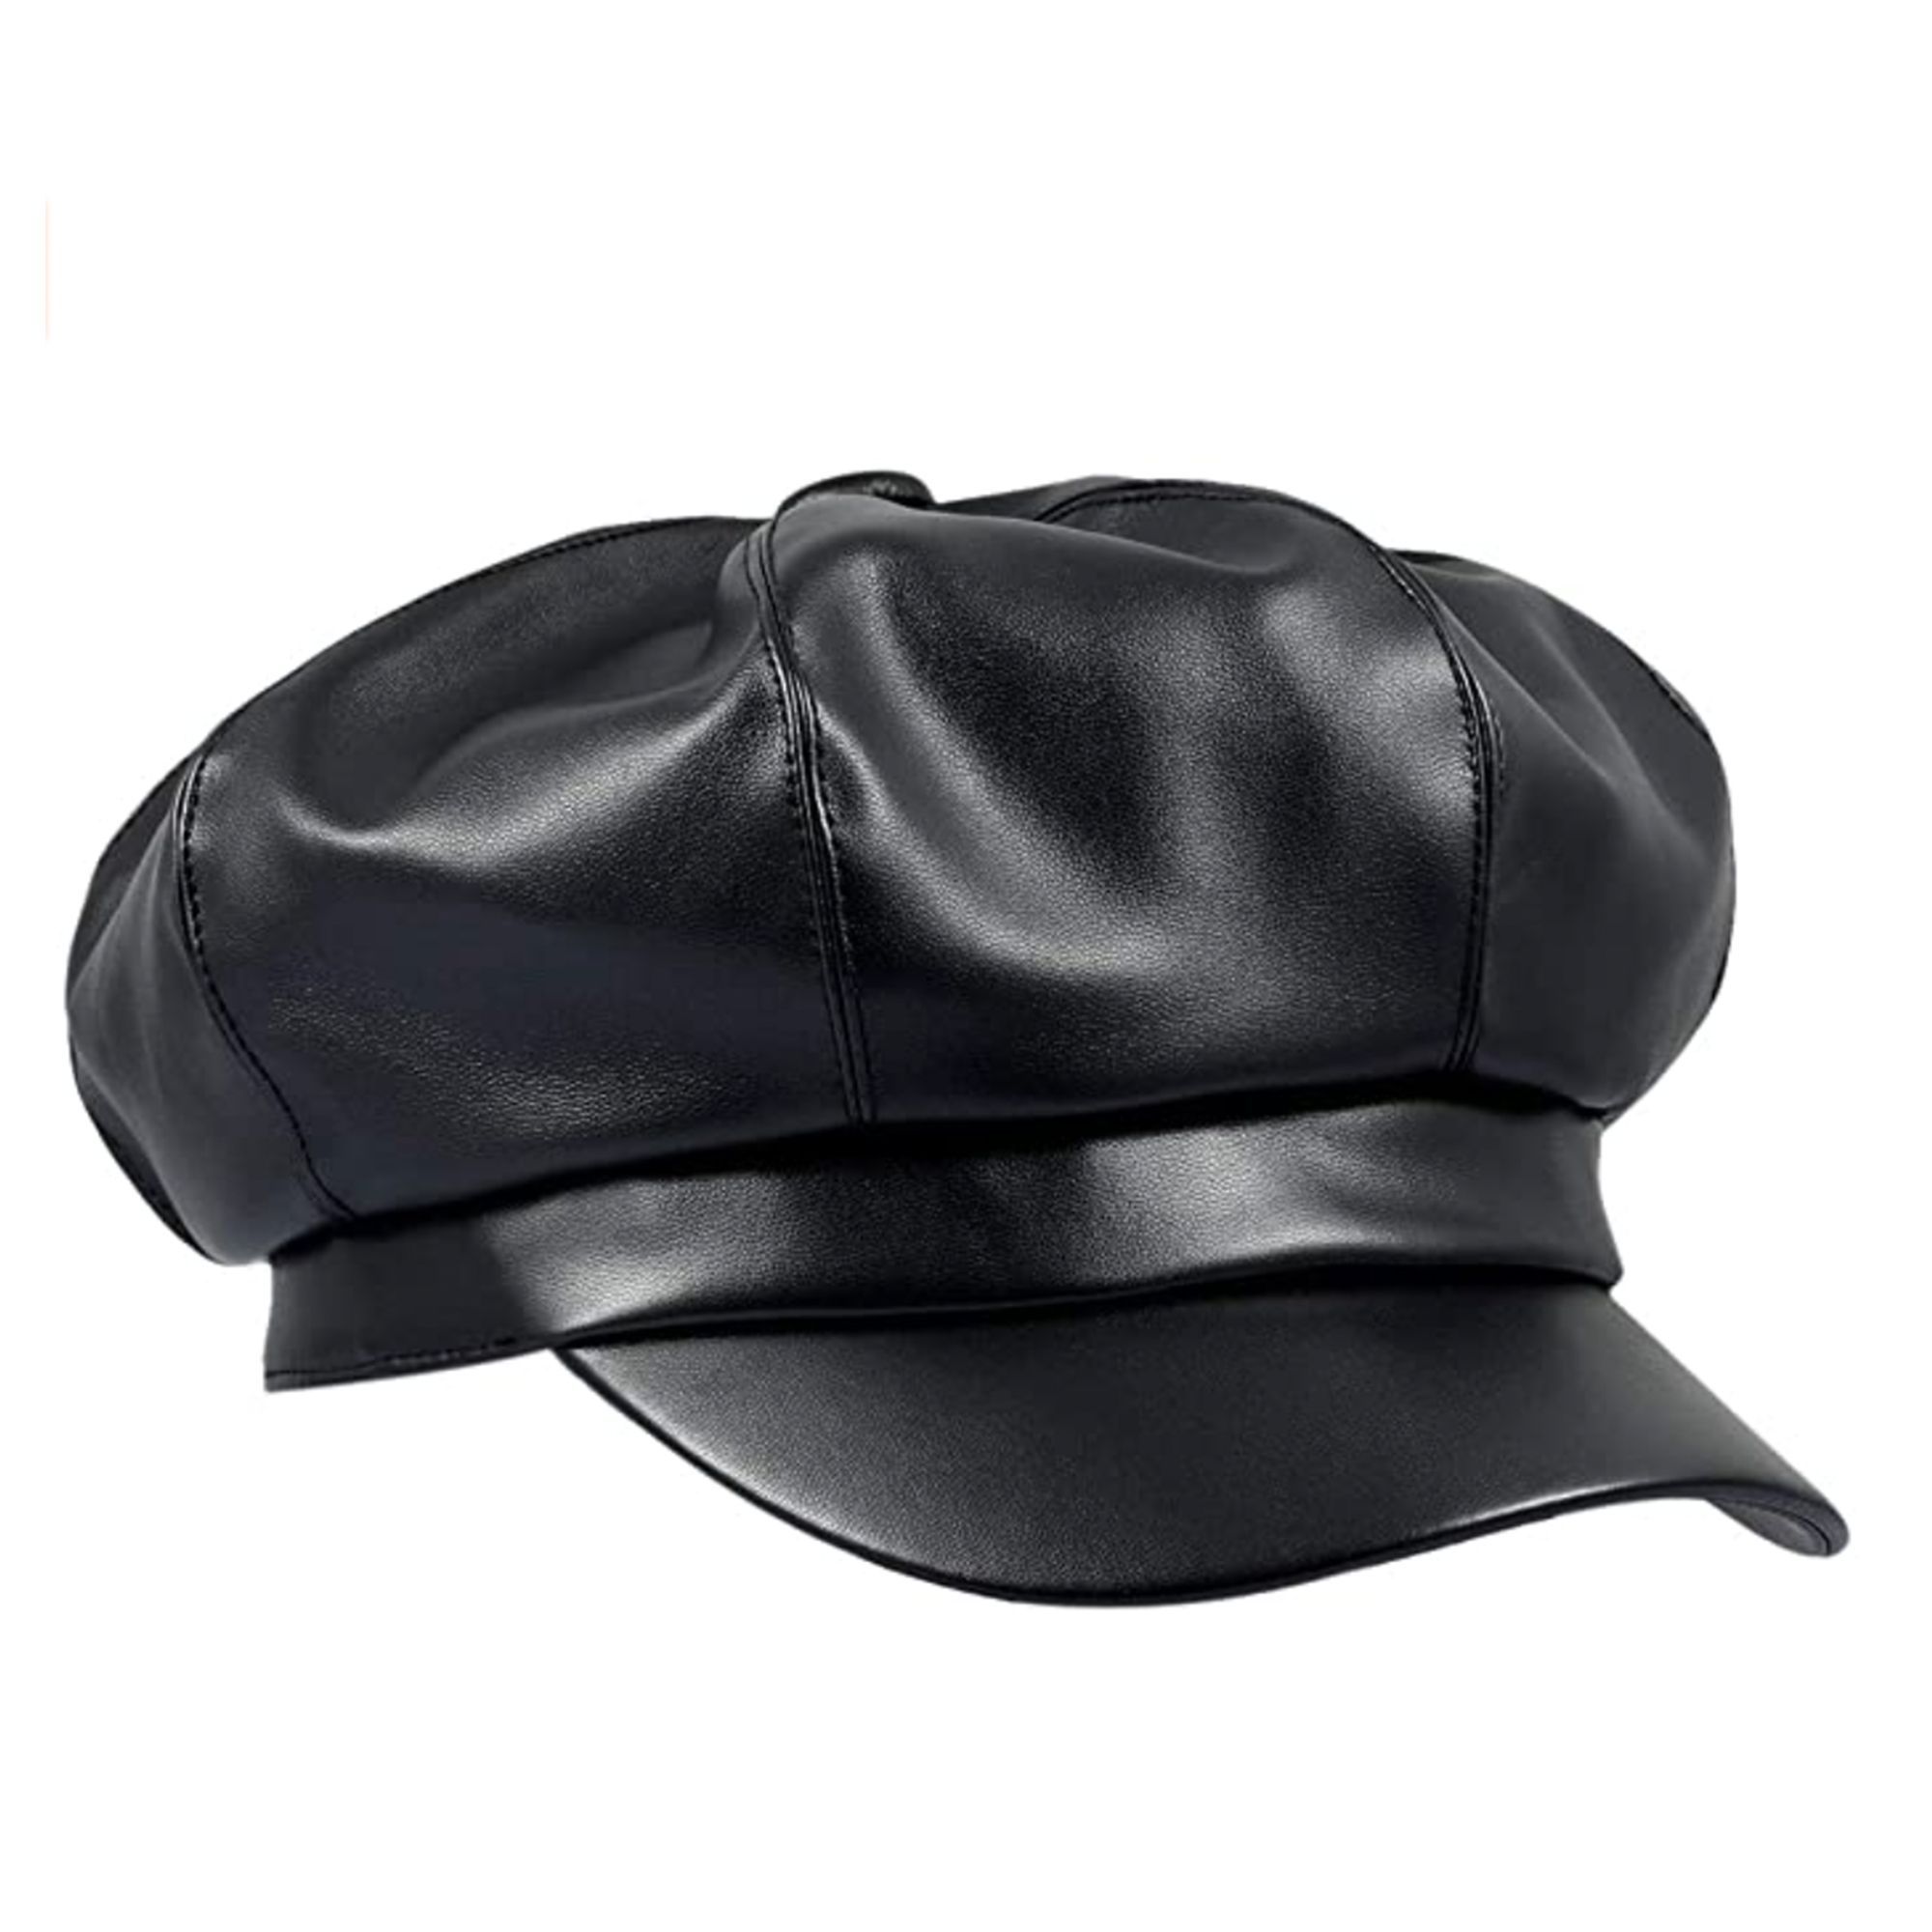 3D Printing Comfort for Men and Women Janet Jackson Flat Brim Baseball Cap Black 